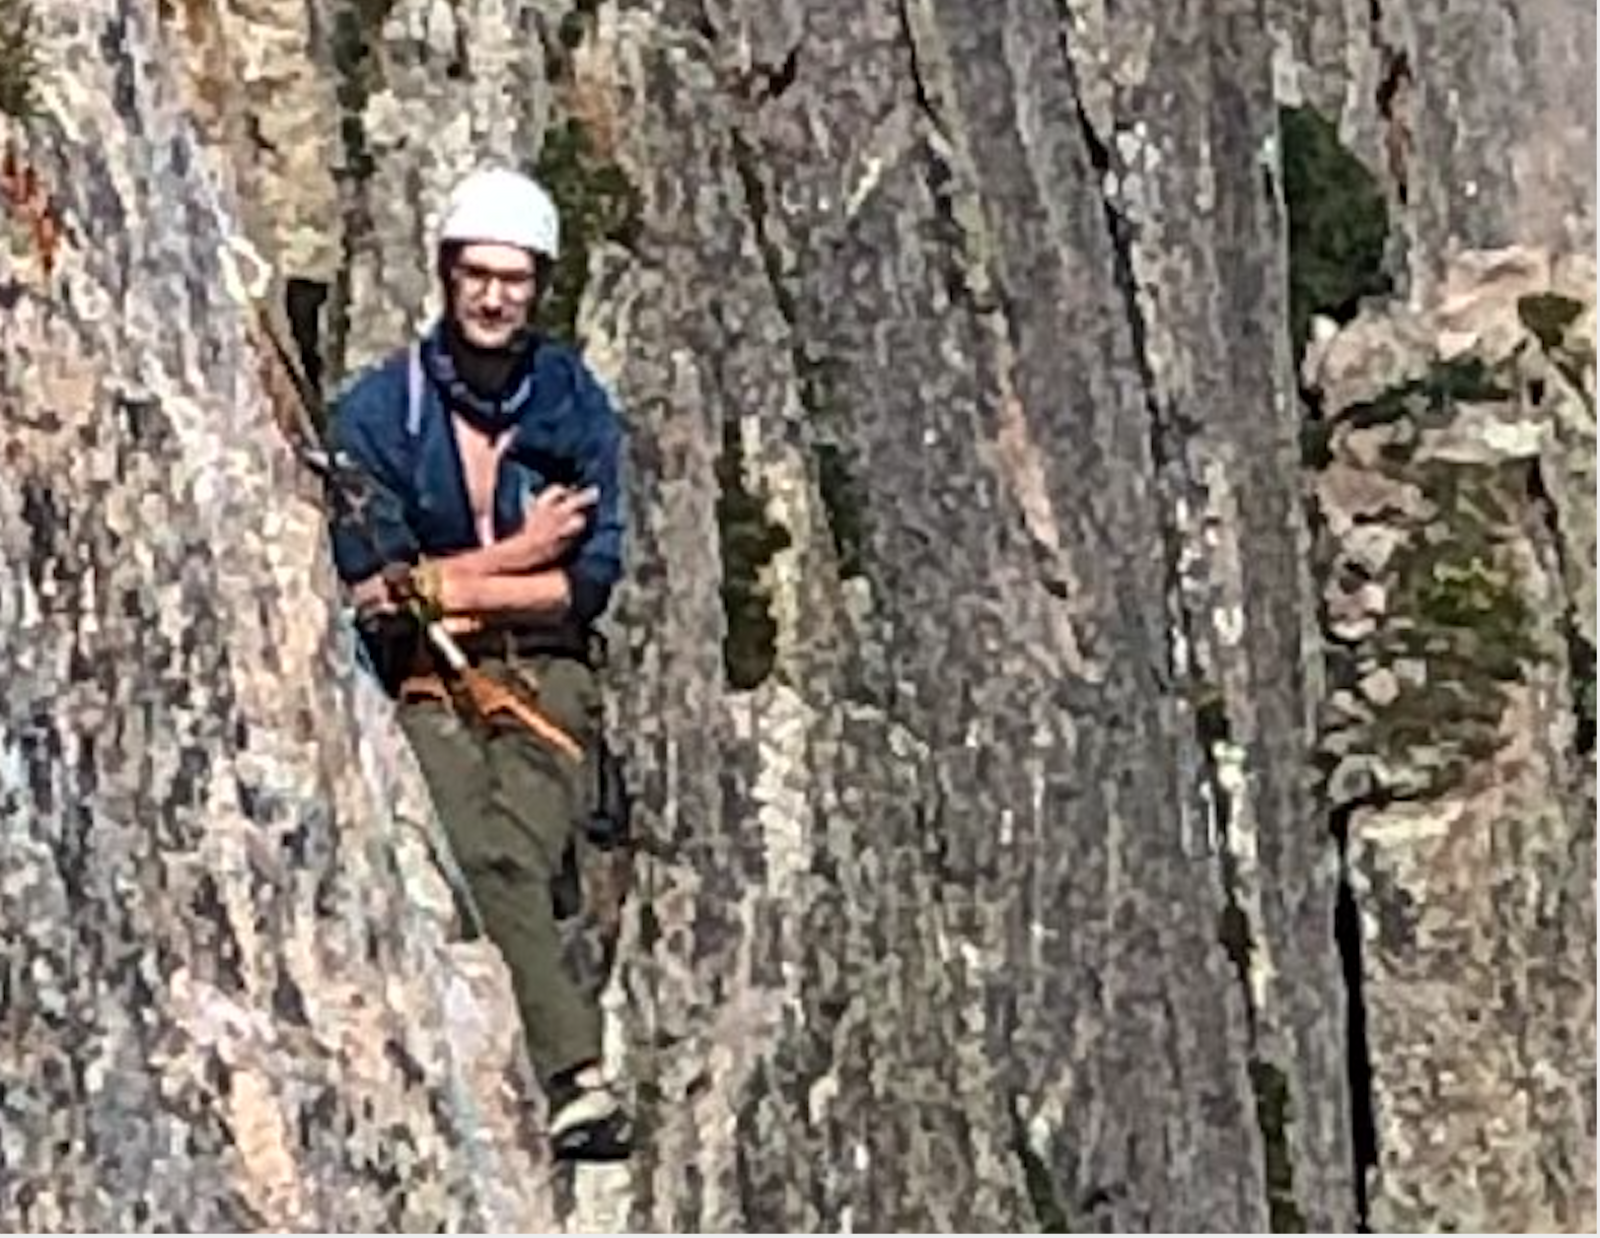 Climber looking unamused in hanging belay on the Diamond, Longs Peak